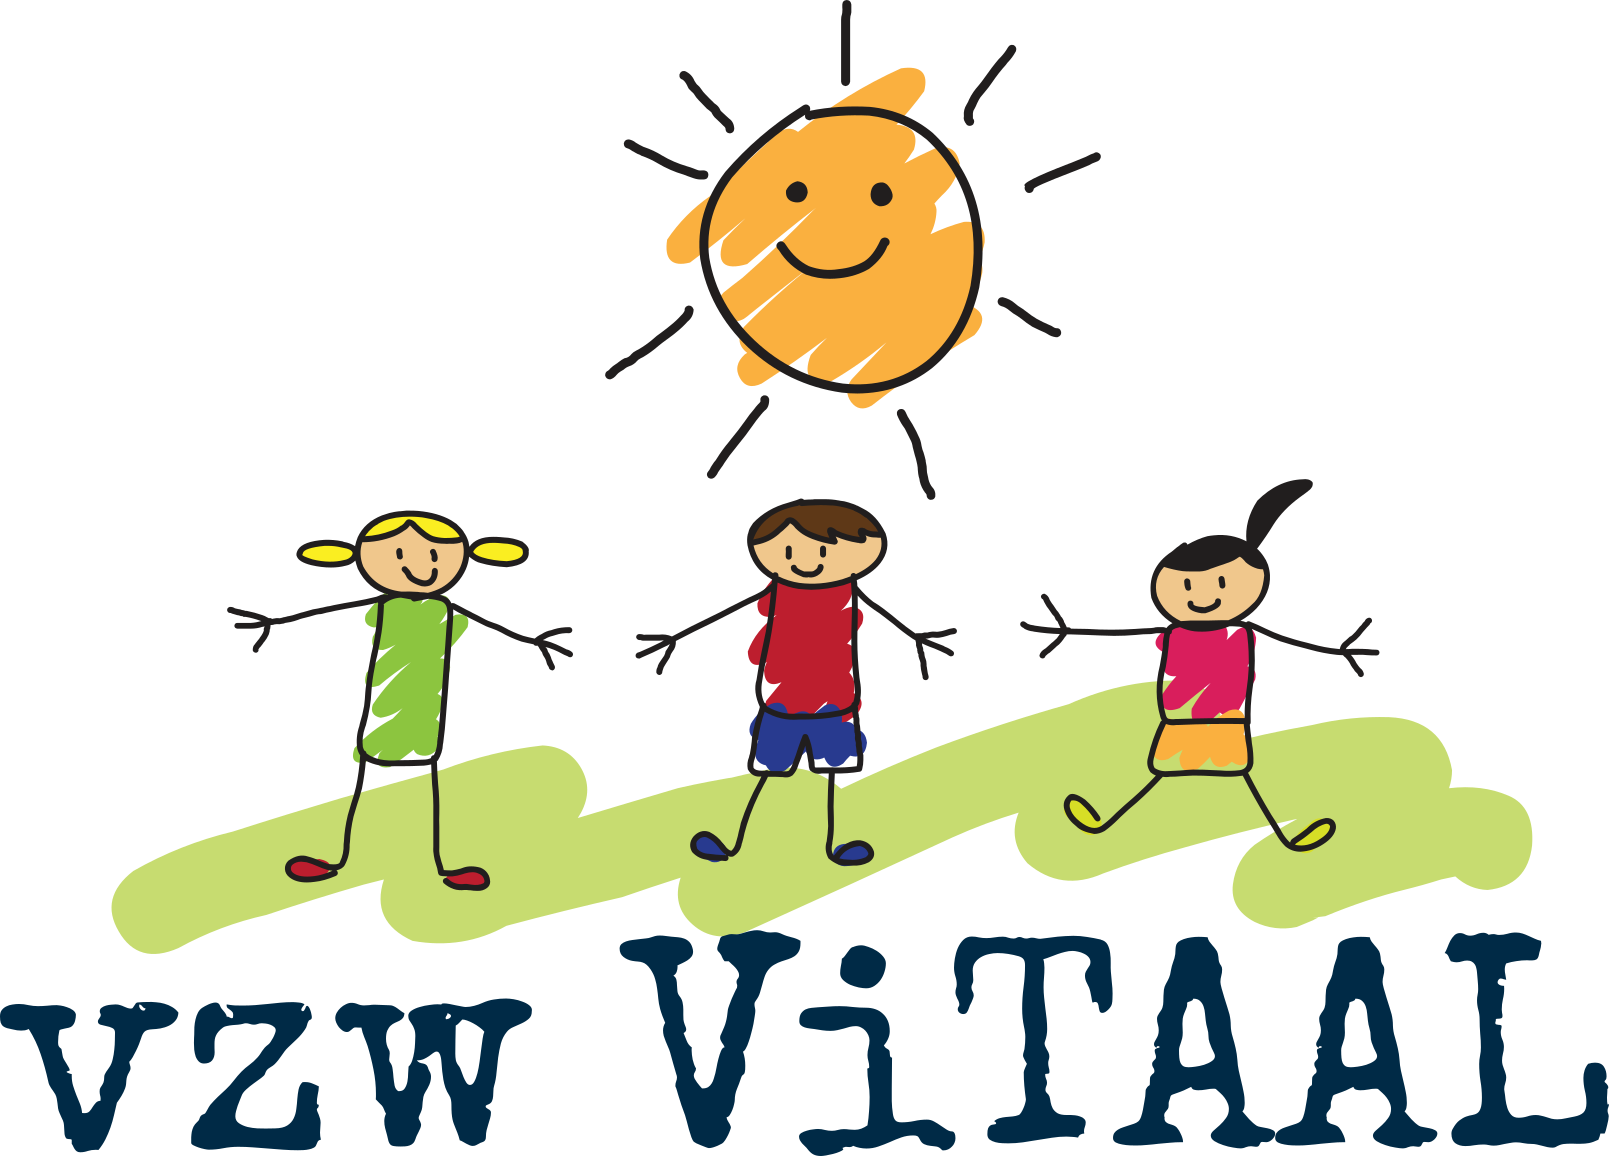 vzw Vitaal logo